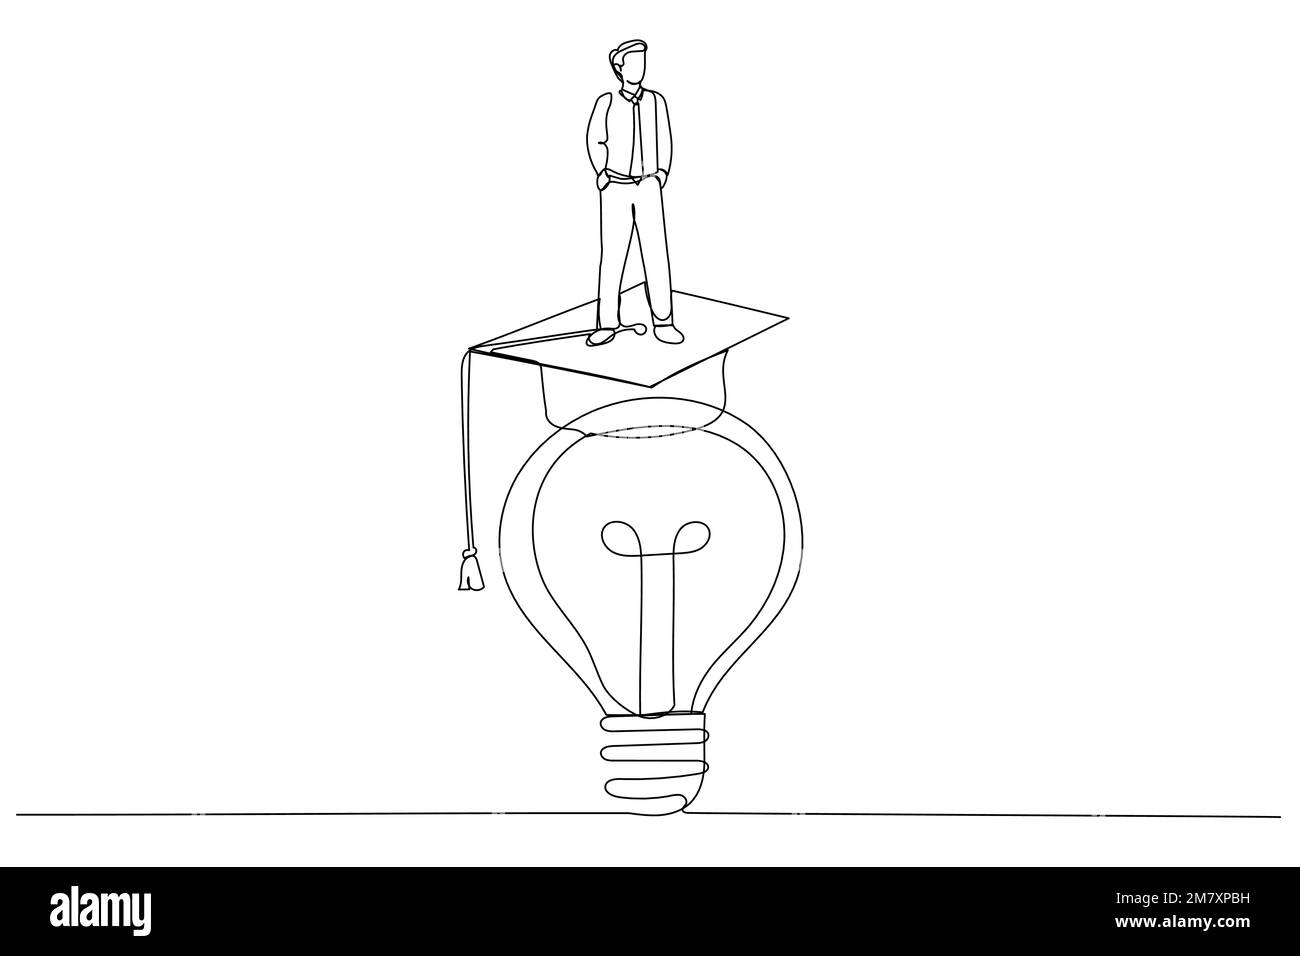 Dessin d'homme d'affaires vont à l'intérieur d'une ampoule pour fixer ou inventer une nouvelle idée métaphore de l'esprit d'entreprise. Dessin au trait continu Illustration de Vecteur